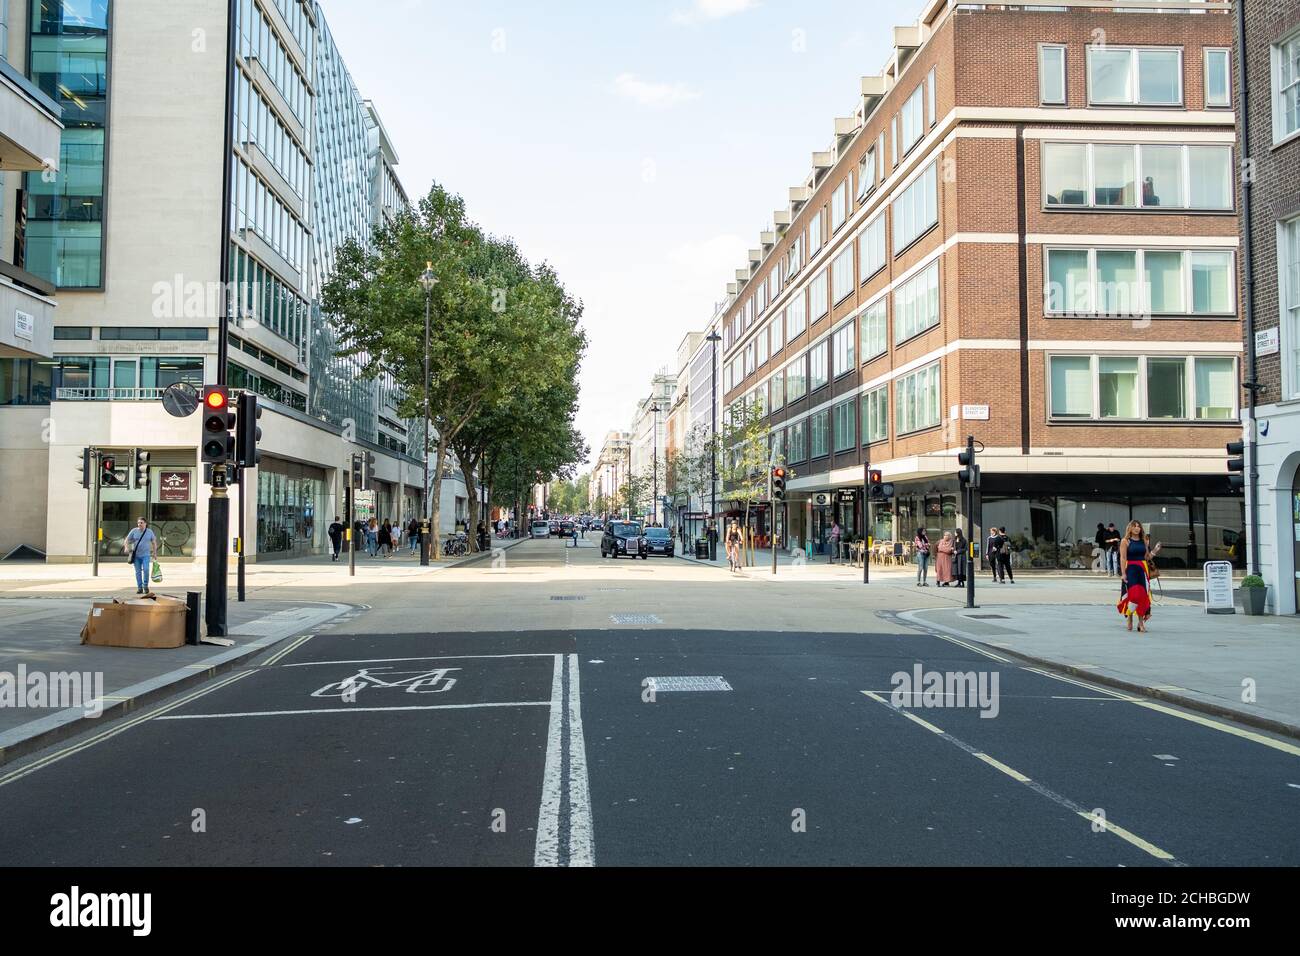 Londres- septembre 2020: Baker Street dans la région de Marylebone de la ville de Westminster - plus calme que la normale en raison de Covid 19 Banque D'Images